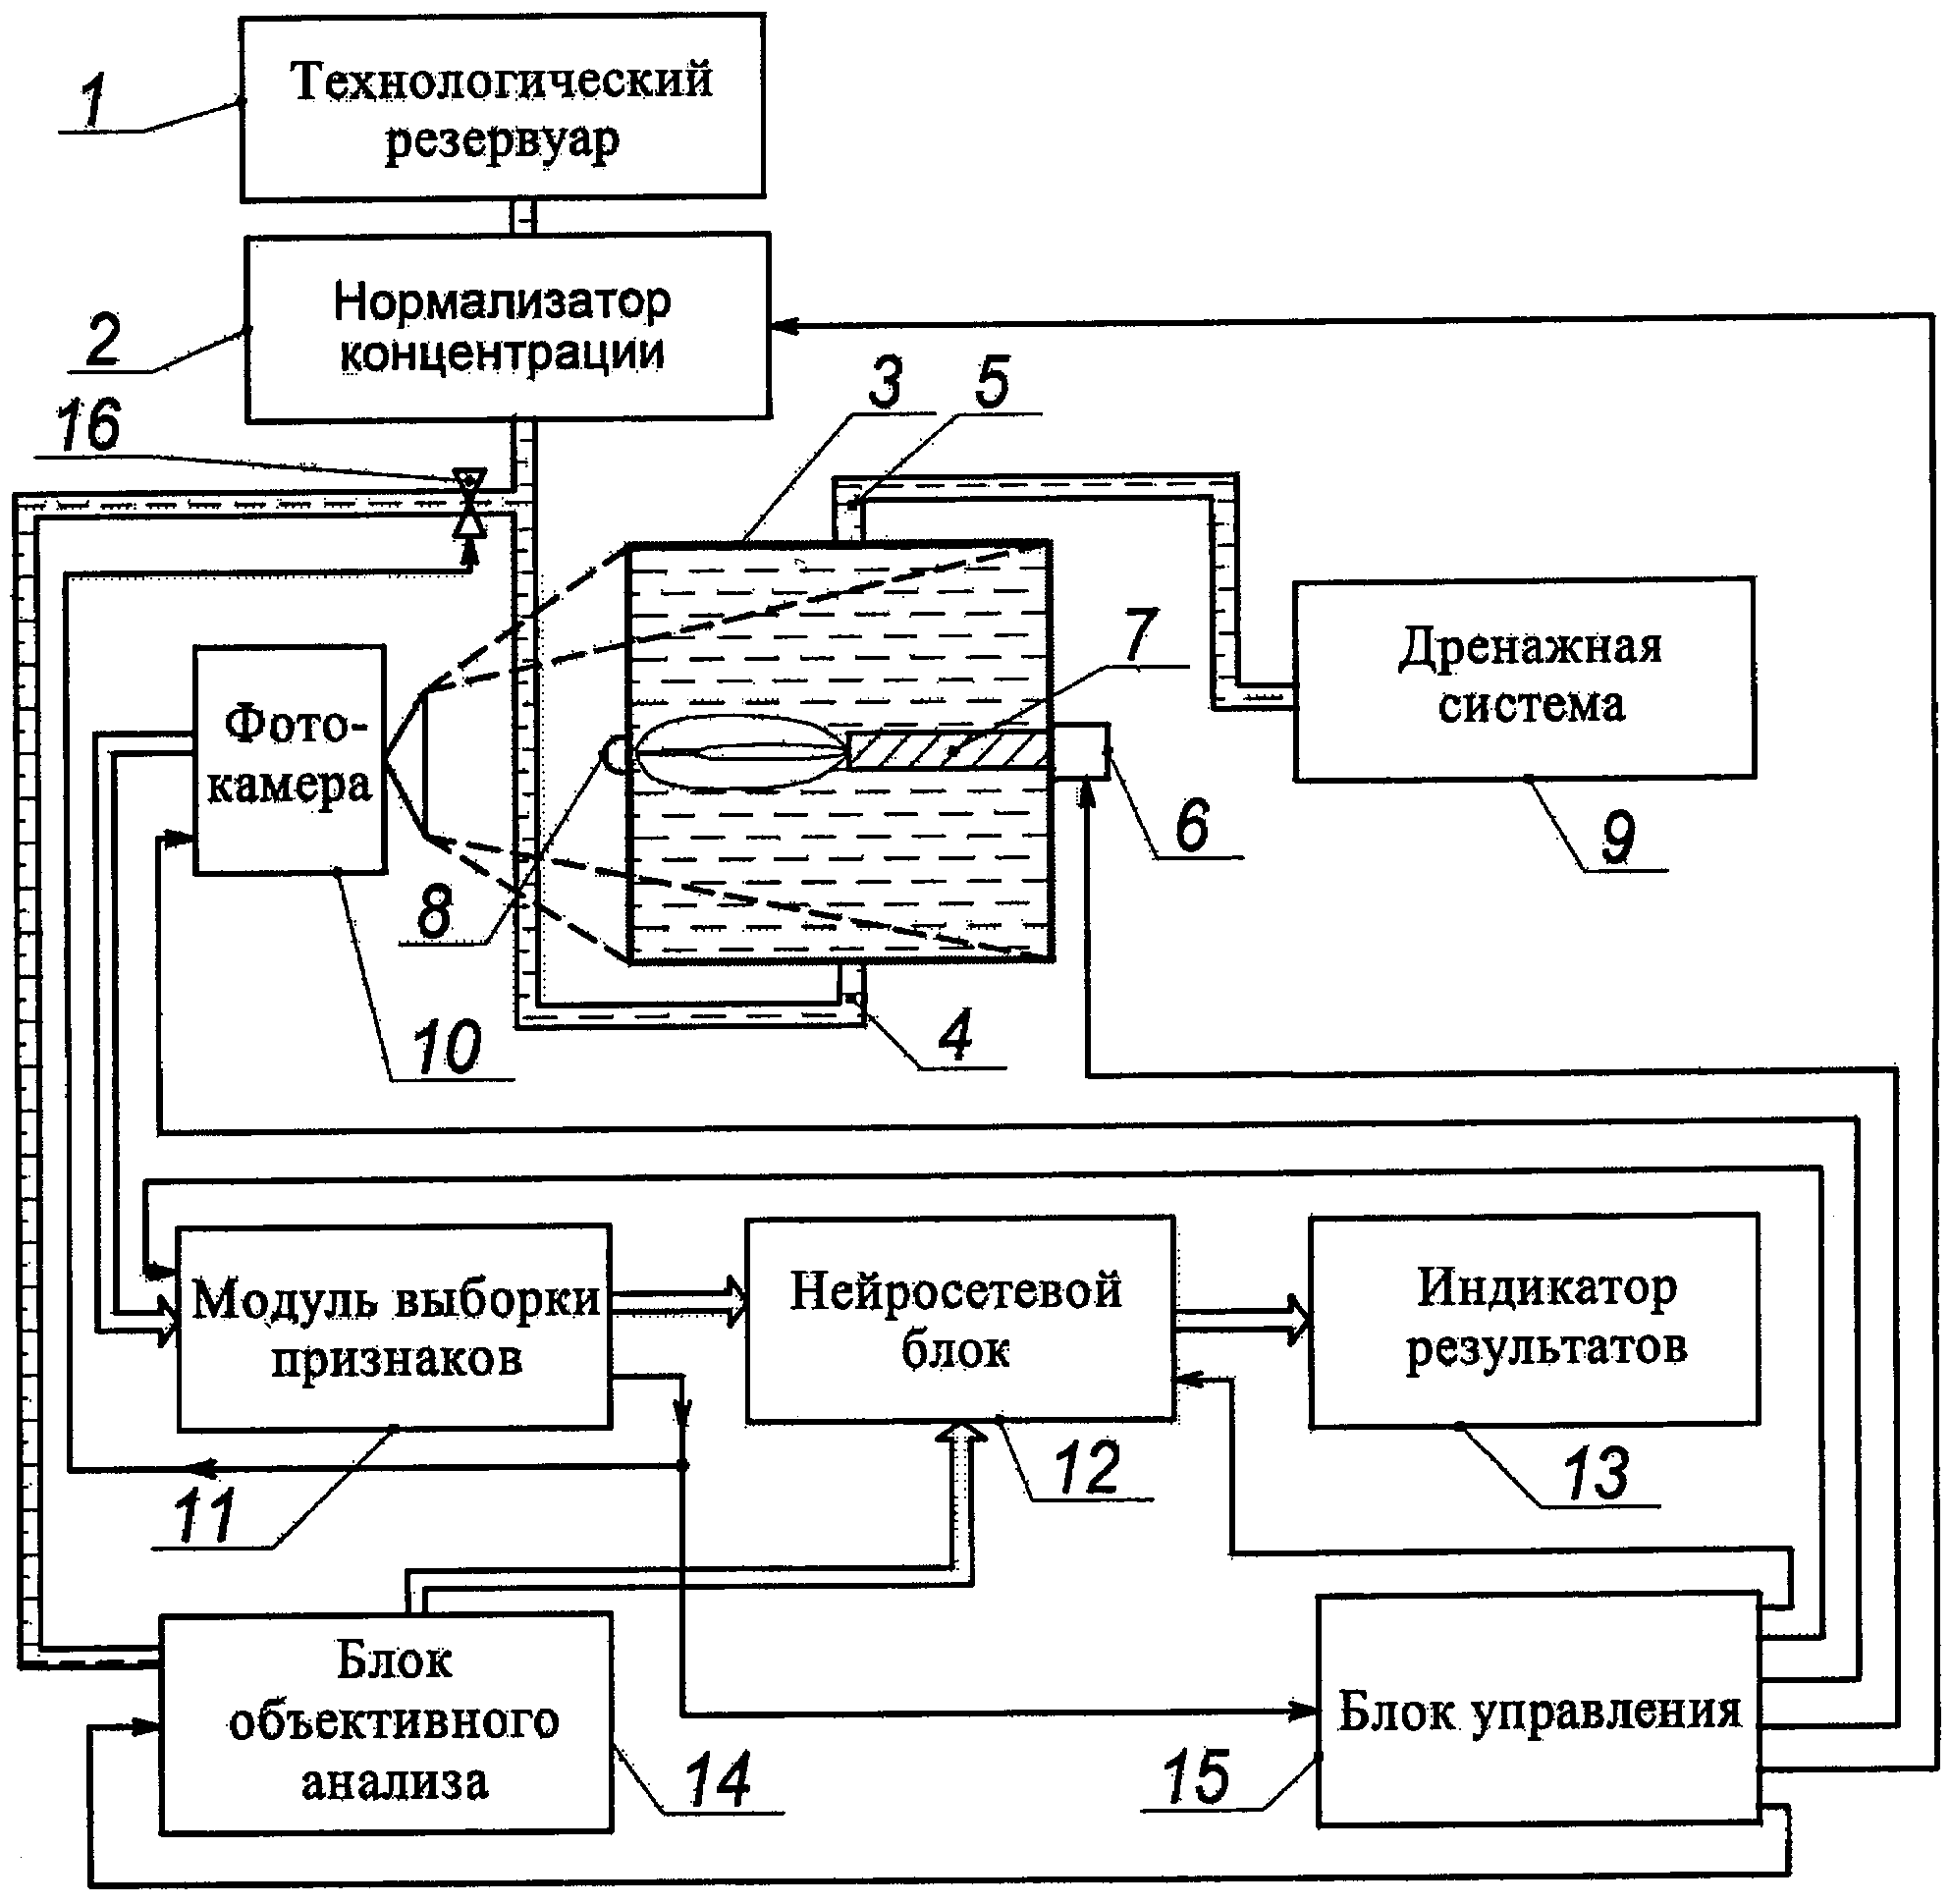 Система гранулометрического анализа жидких дисперсных сред